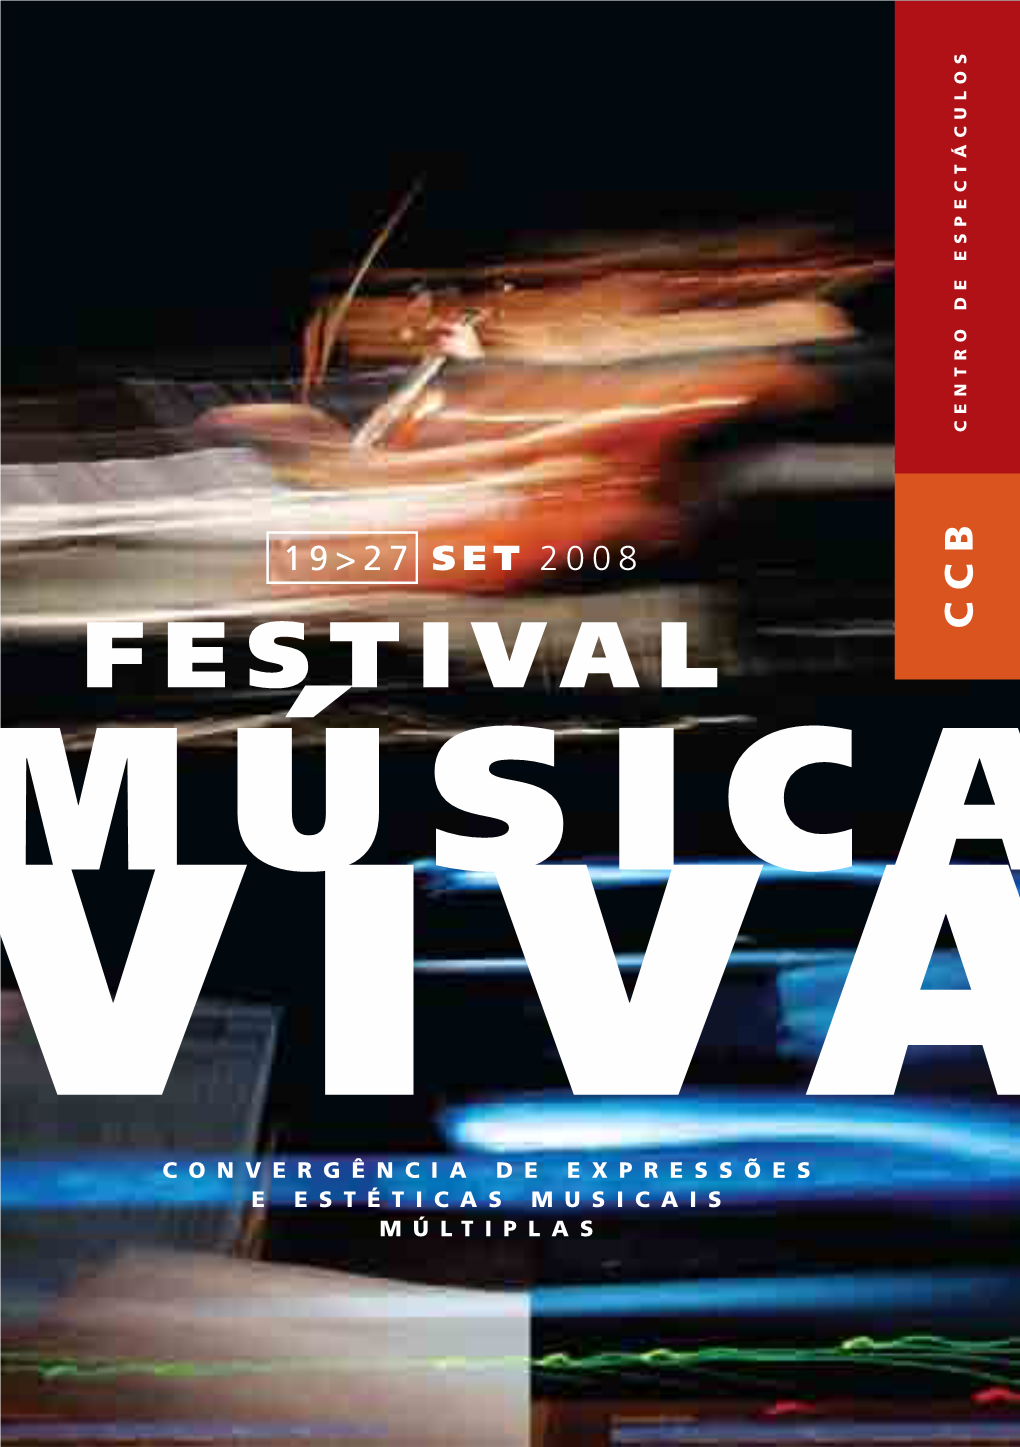 Festival Convergência De Expressões E Estéticasm Usicais 19>27 SET Múltipla S 2008